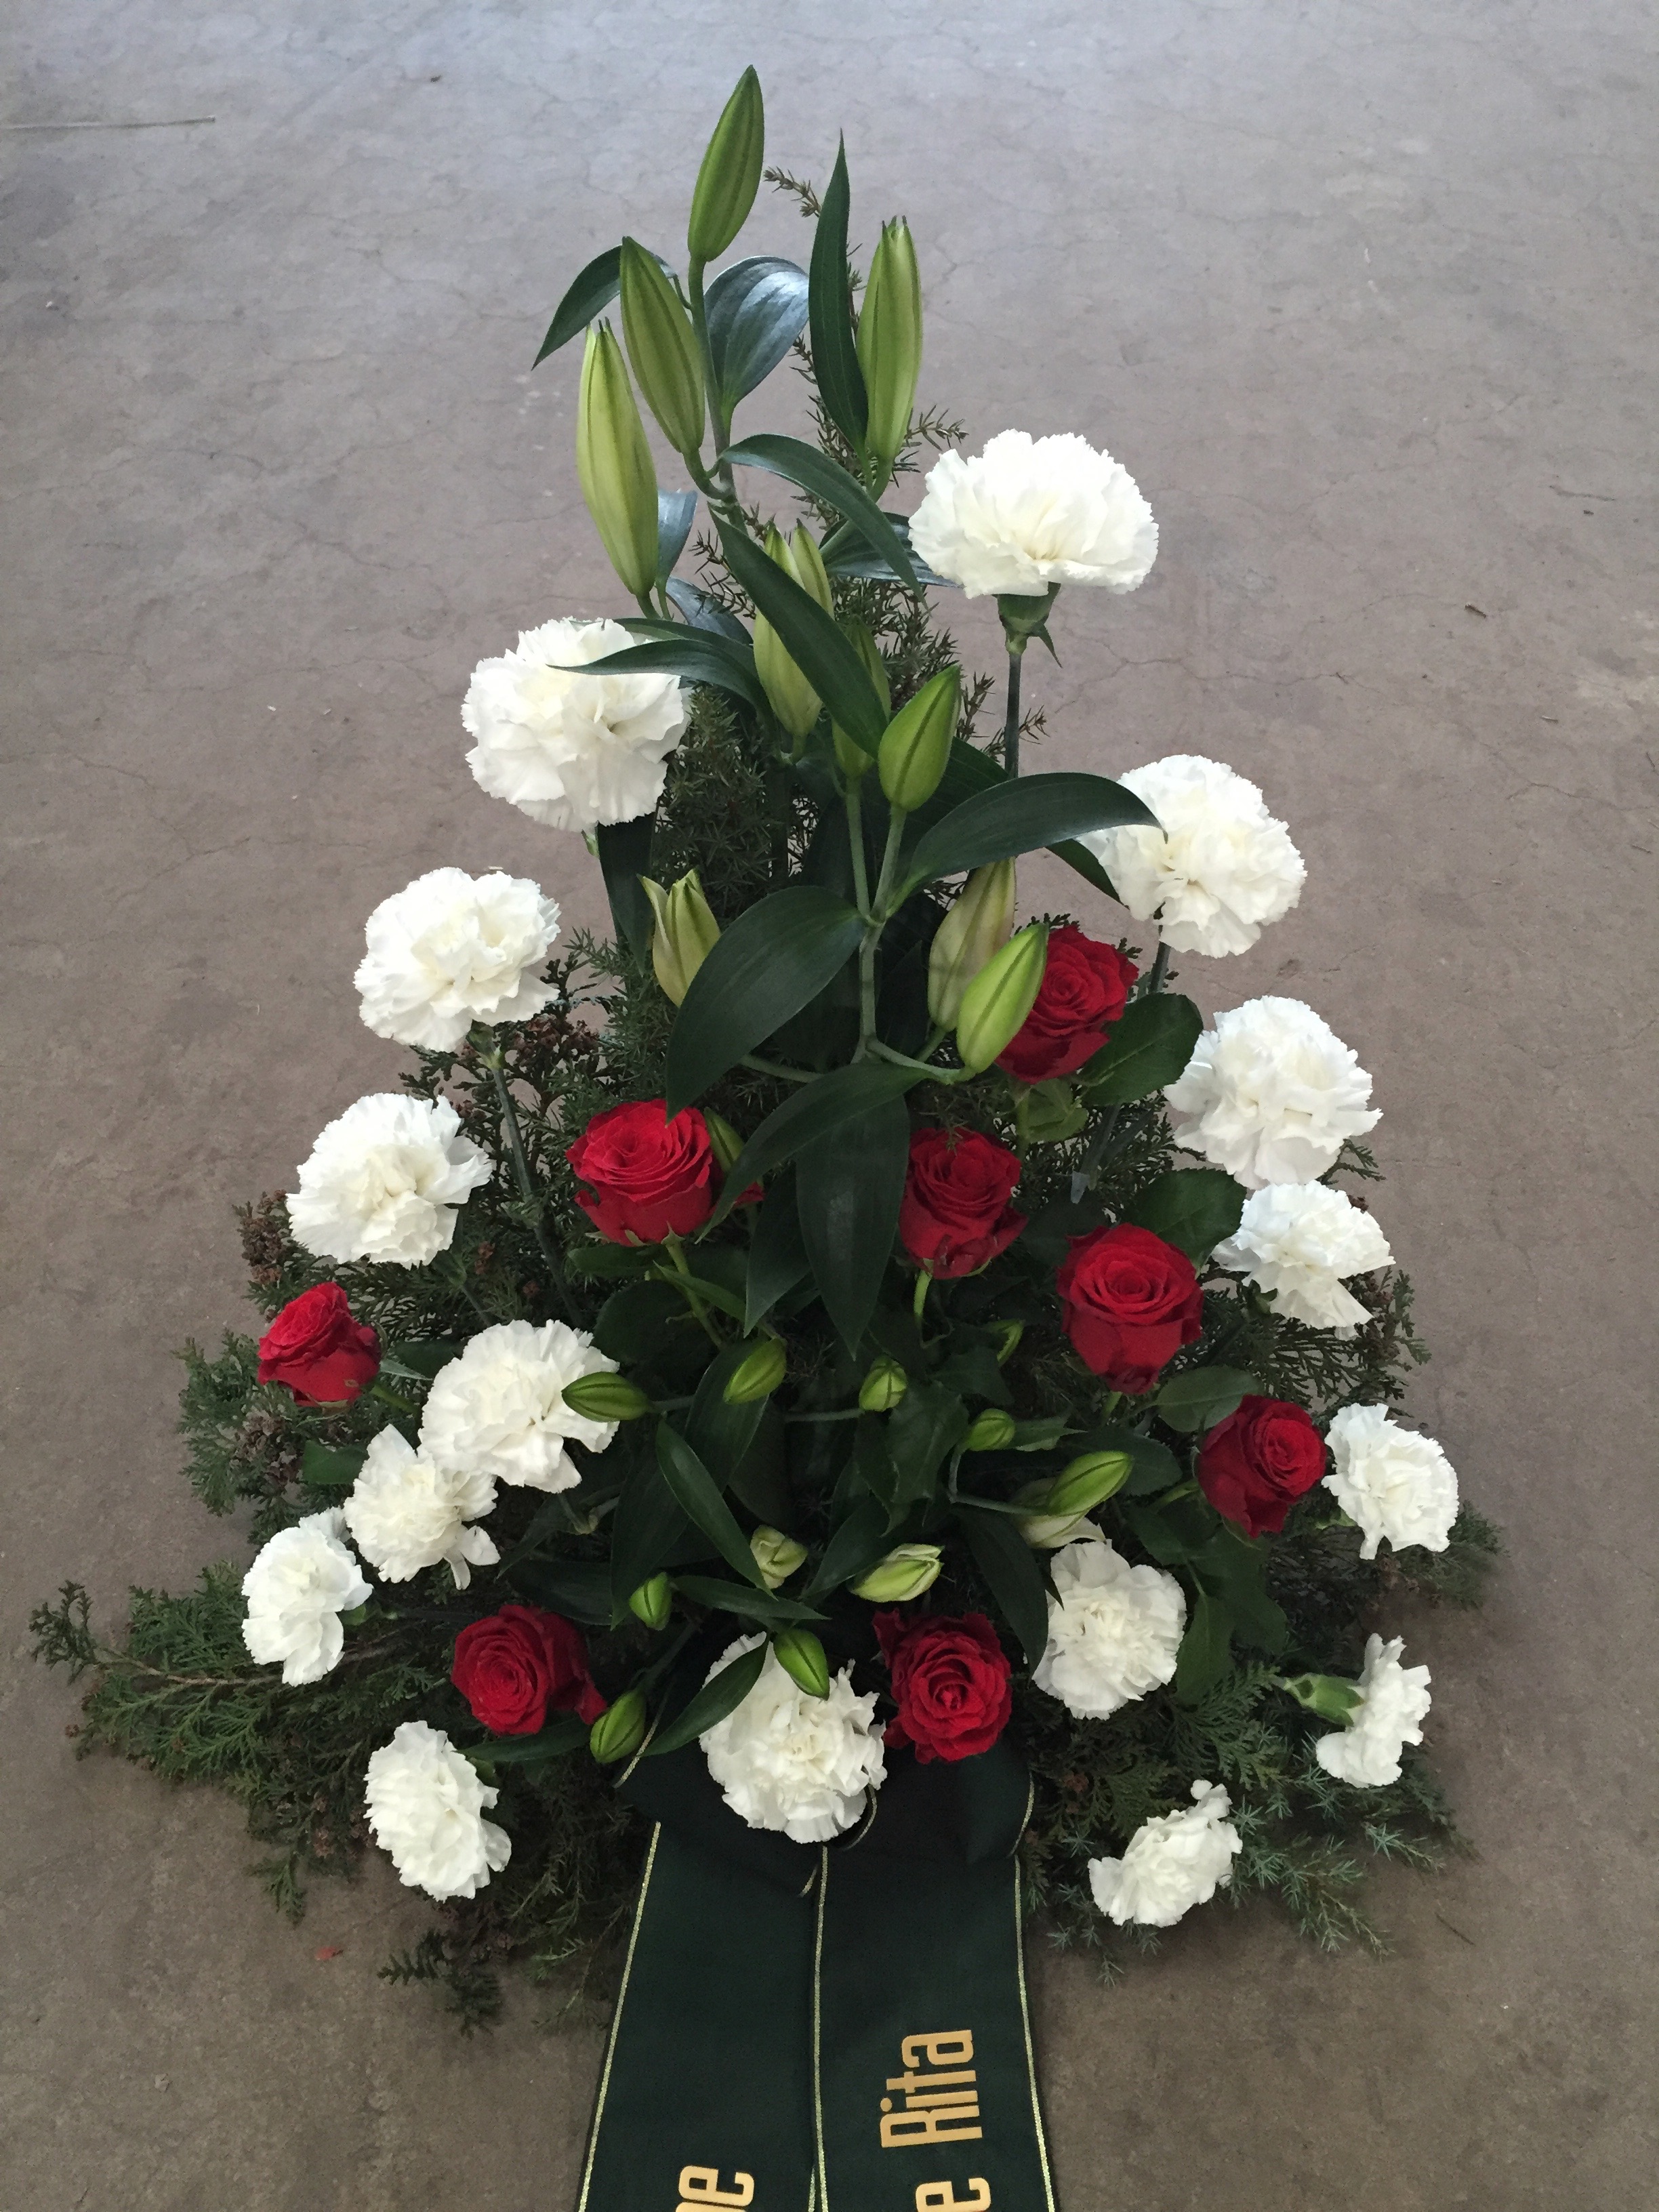 XL Beerdigung Bestattung Grabgesteck Trauer künstlich Grabschmuck Blumengesteck 